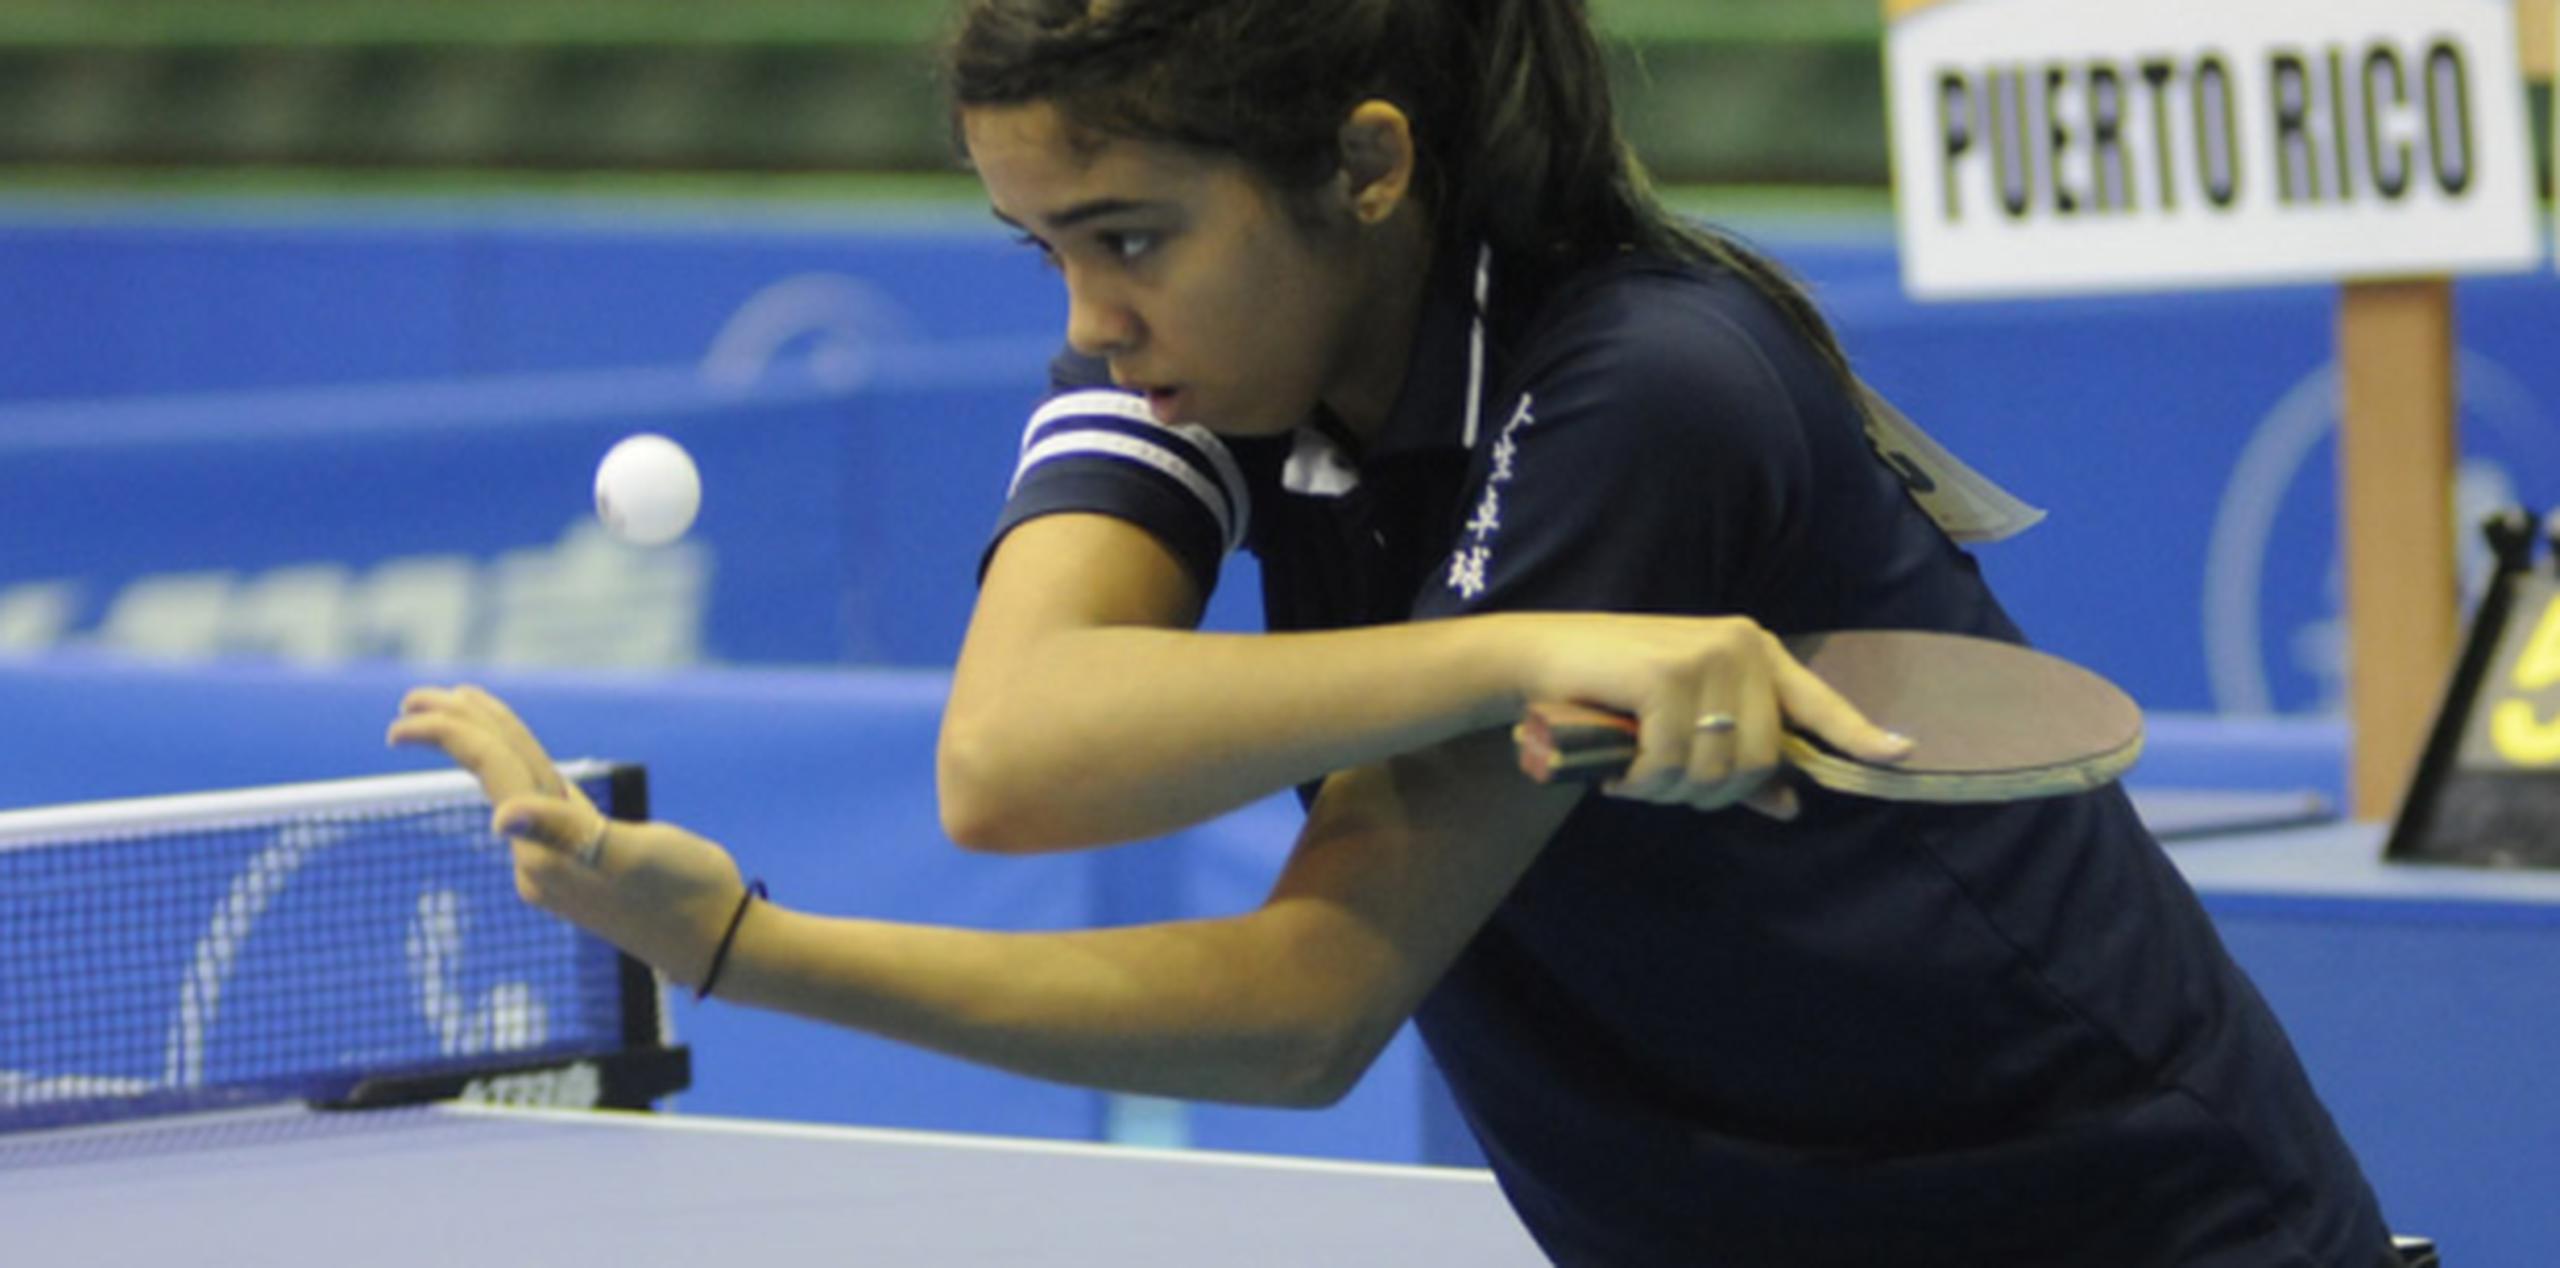 La jugadora Adriana Díaz superó 11-8, 11-7 y 11-2 a Daniela Camino. (xavier.araujo@gfrmedia.com)